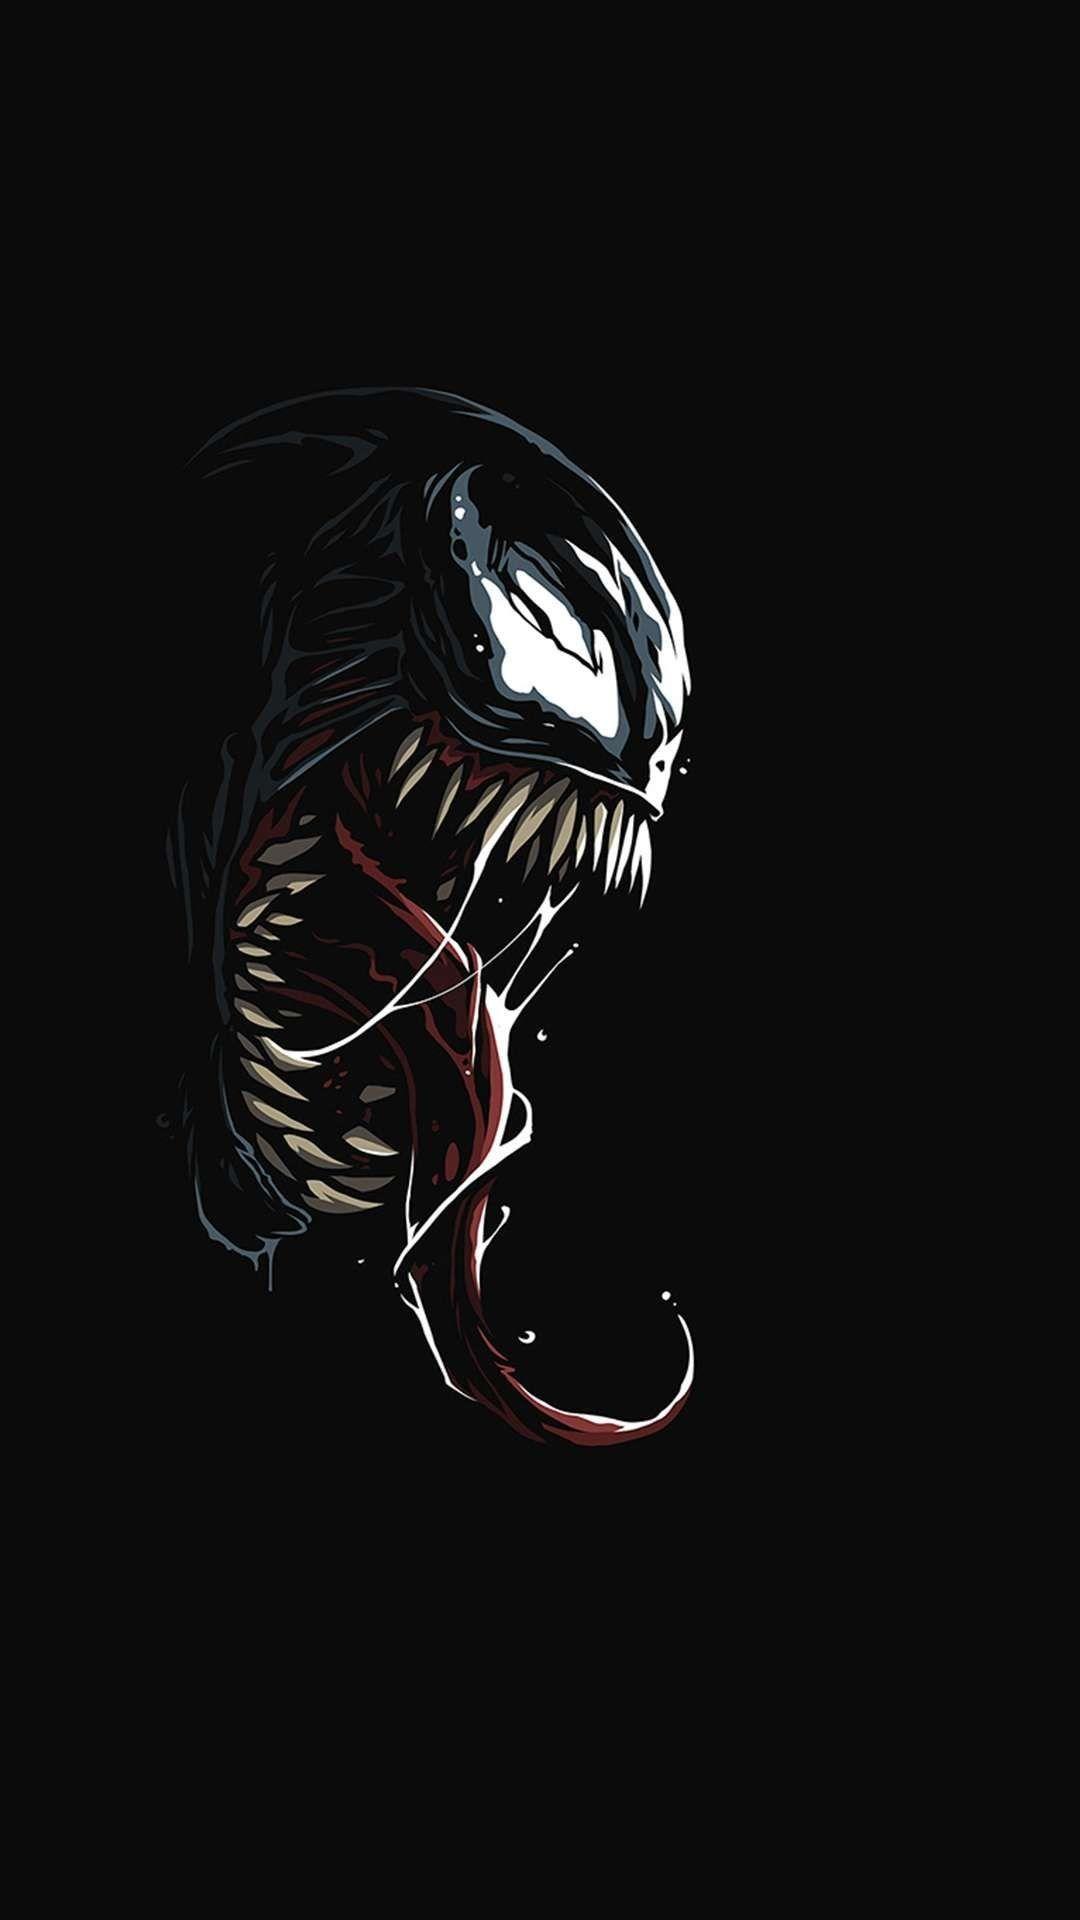 Bộ sưu tập 200 Venom background 4k tuyệt đẹp